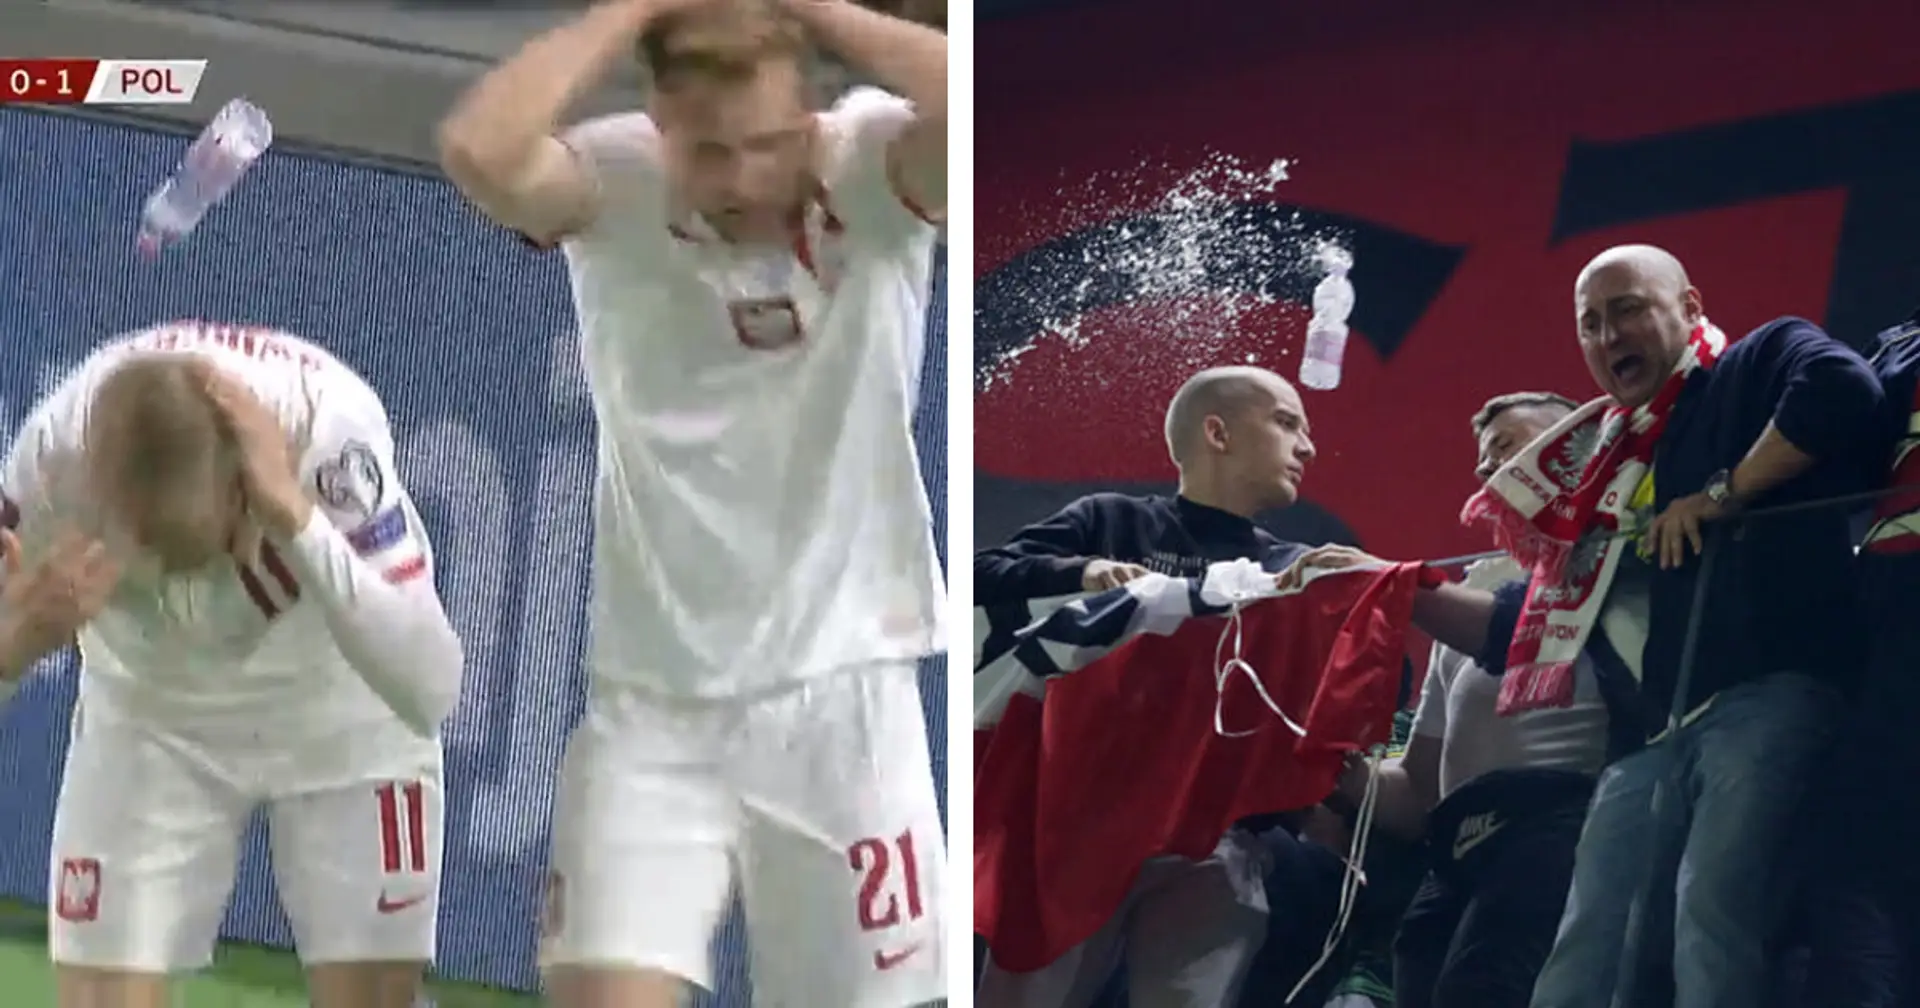 Spiel von Albanien vs. Polen wurde unterbrochen: Fans haben 20 Minuten lang die Flaschen auf den Platz geworfen